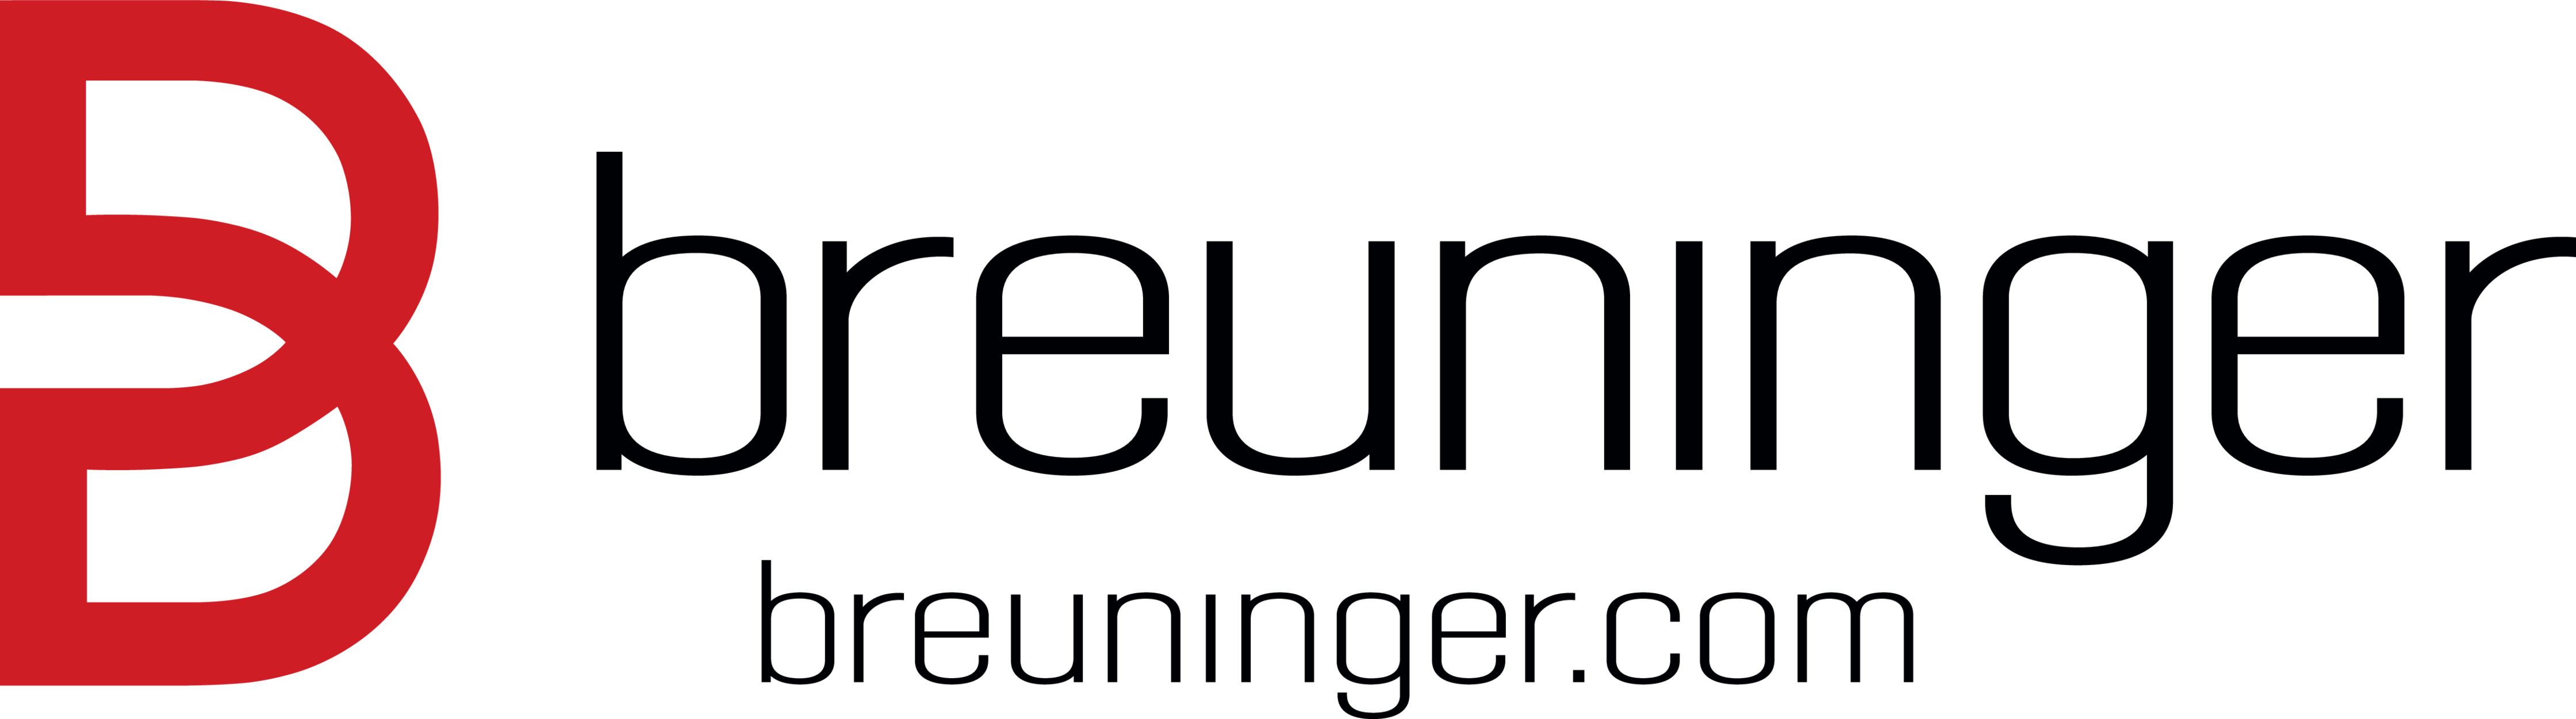 Logo Breuninger URL RGB Schwarz Sub